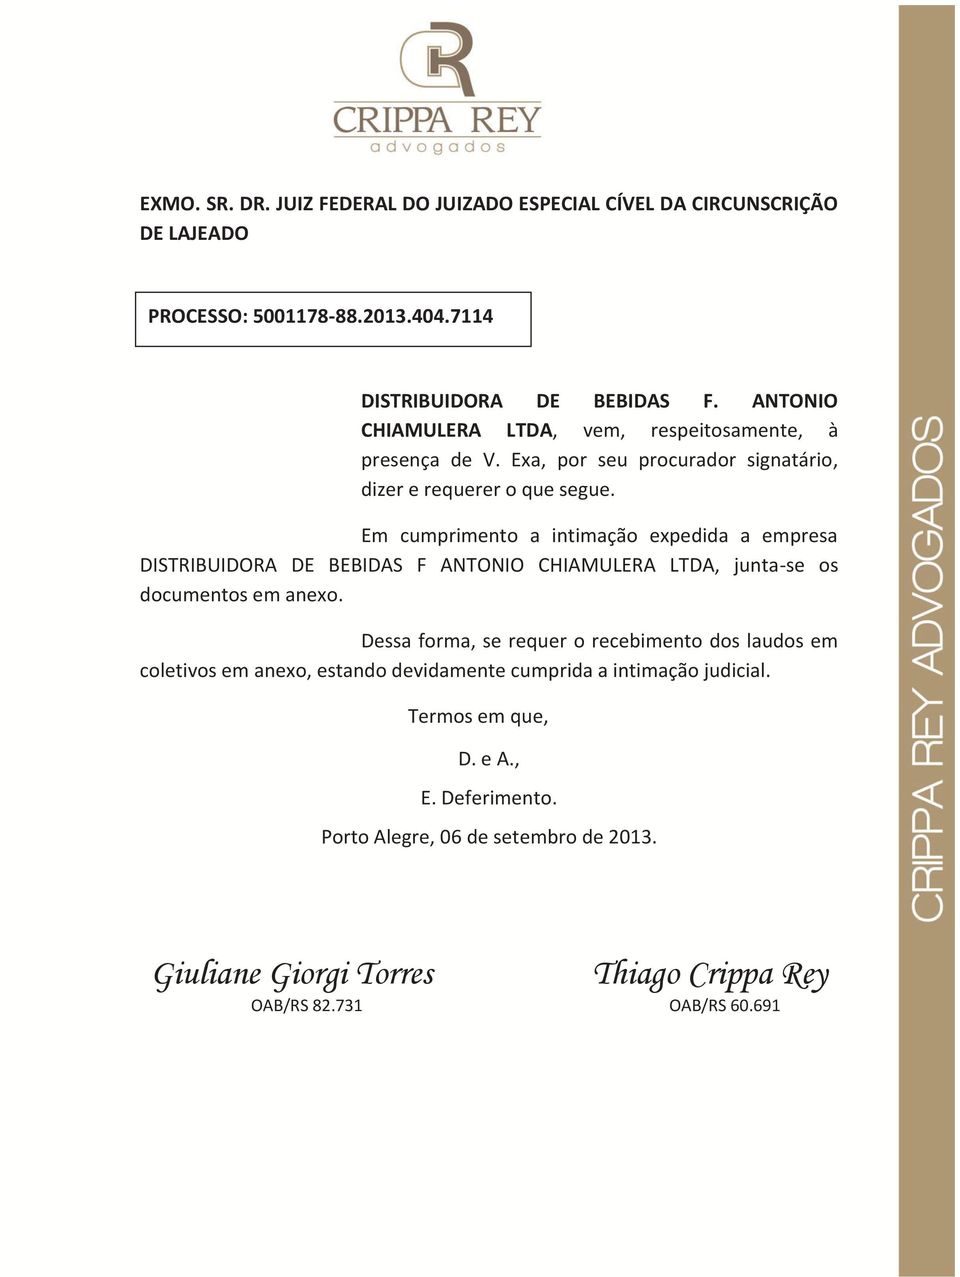 Em cumprimento a intimação expedida a empresa DISTRIBUIDORA DE BEBIDAS F ANTONIO CHIAMULERA LTDA, junta-se os documentos em anexo.